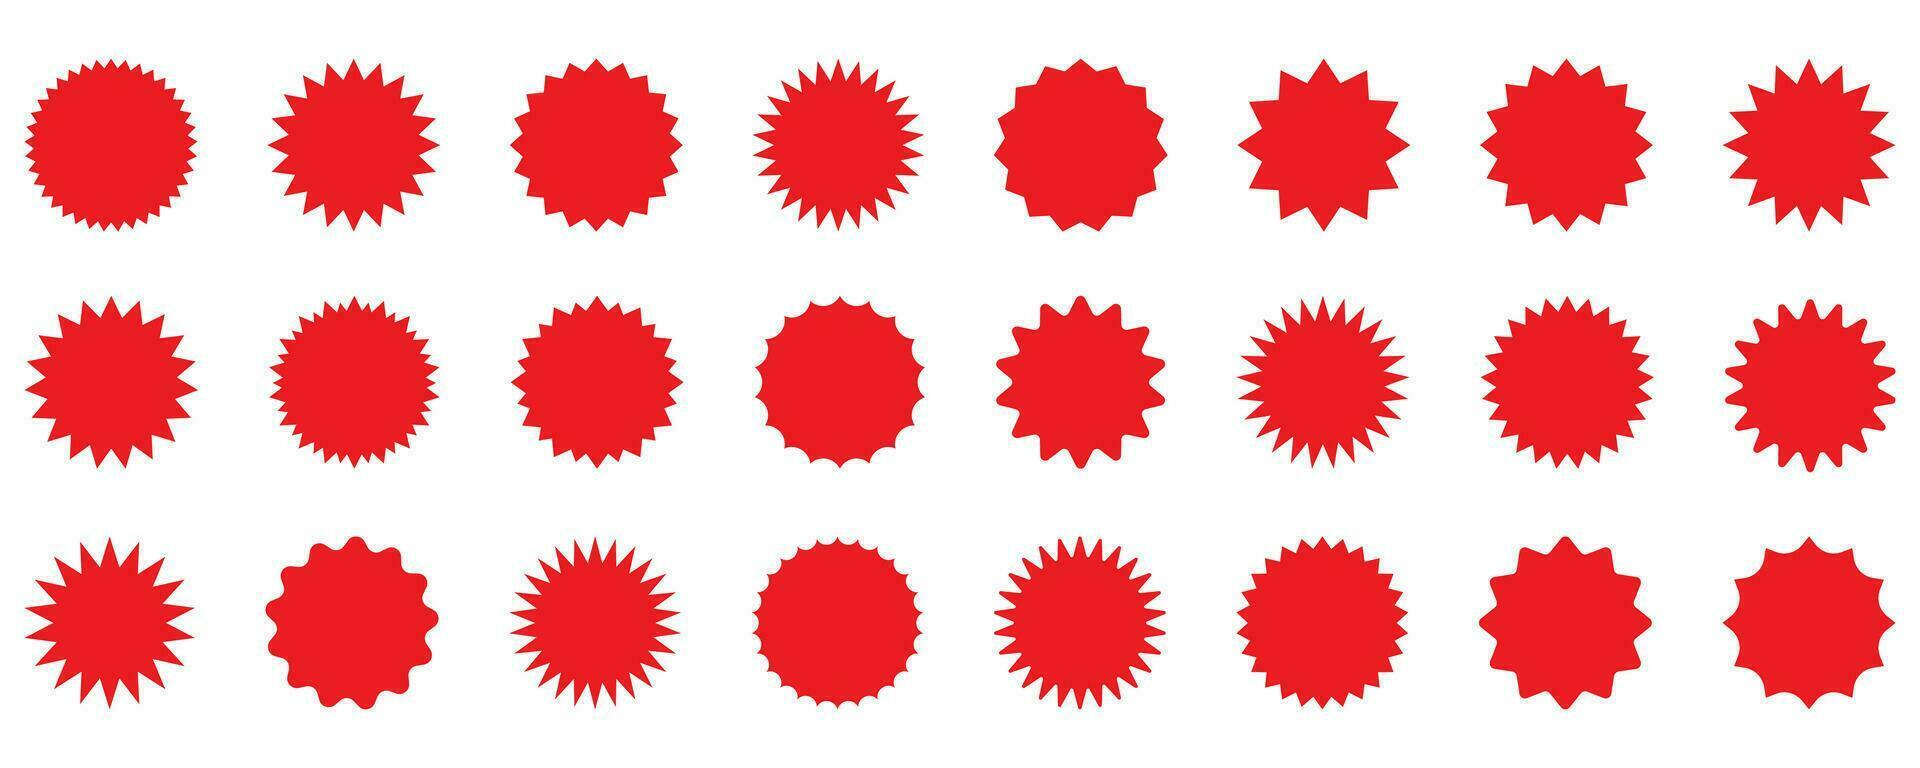 ensemble d'étoiles rouges vectorielles, badges sunburst. icônes rouges sur fond blanc. étiquettes vintage de style plat simple, autocollants. vecteur